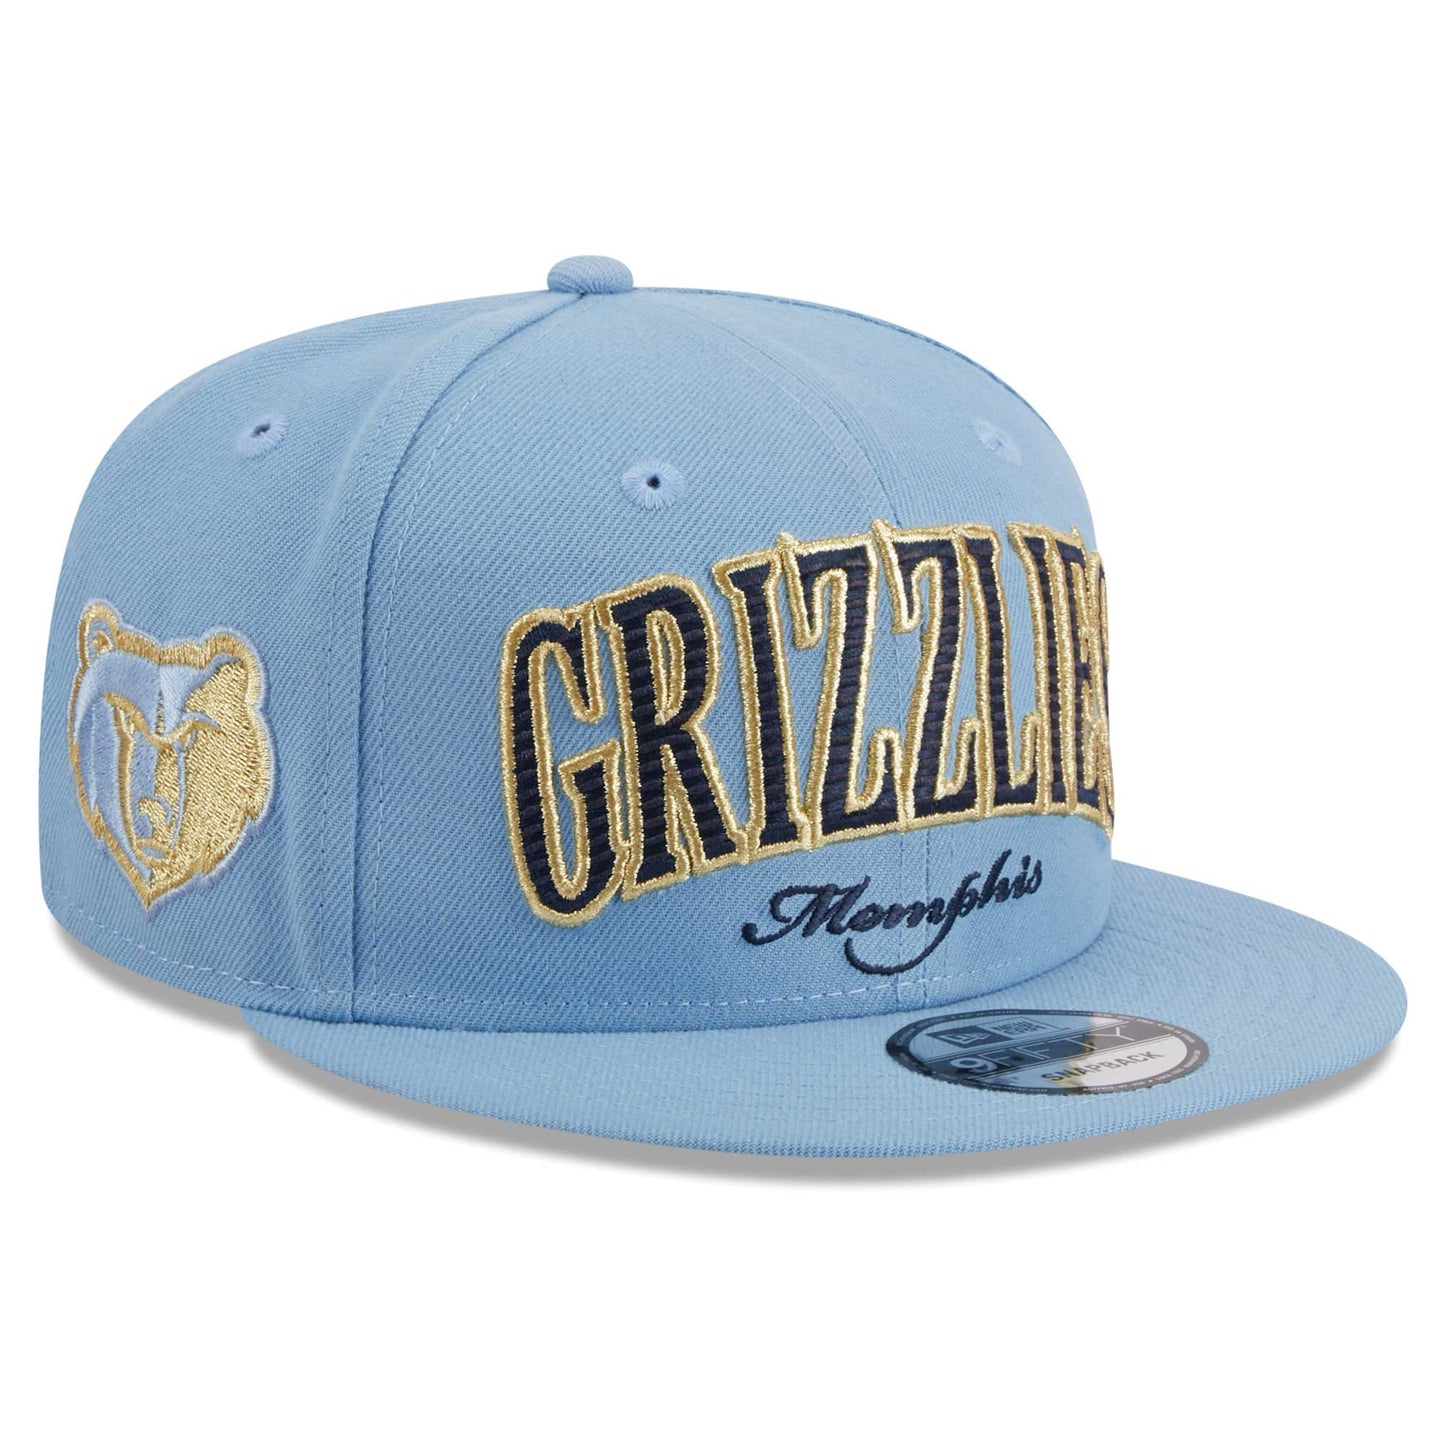 Memphis Grizzlies New Era Golden Tall Text 9FIFTY Snapback Hat - Light Blue